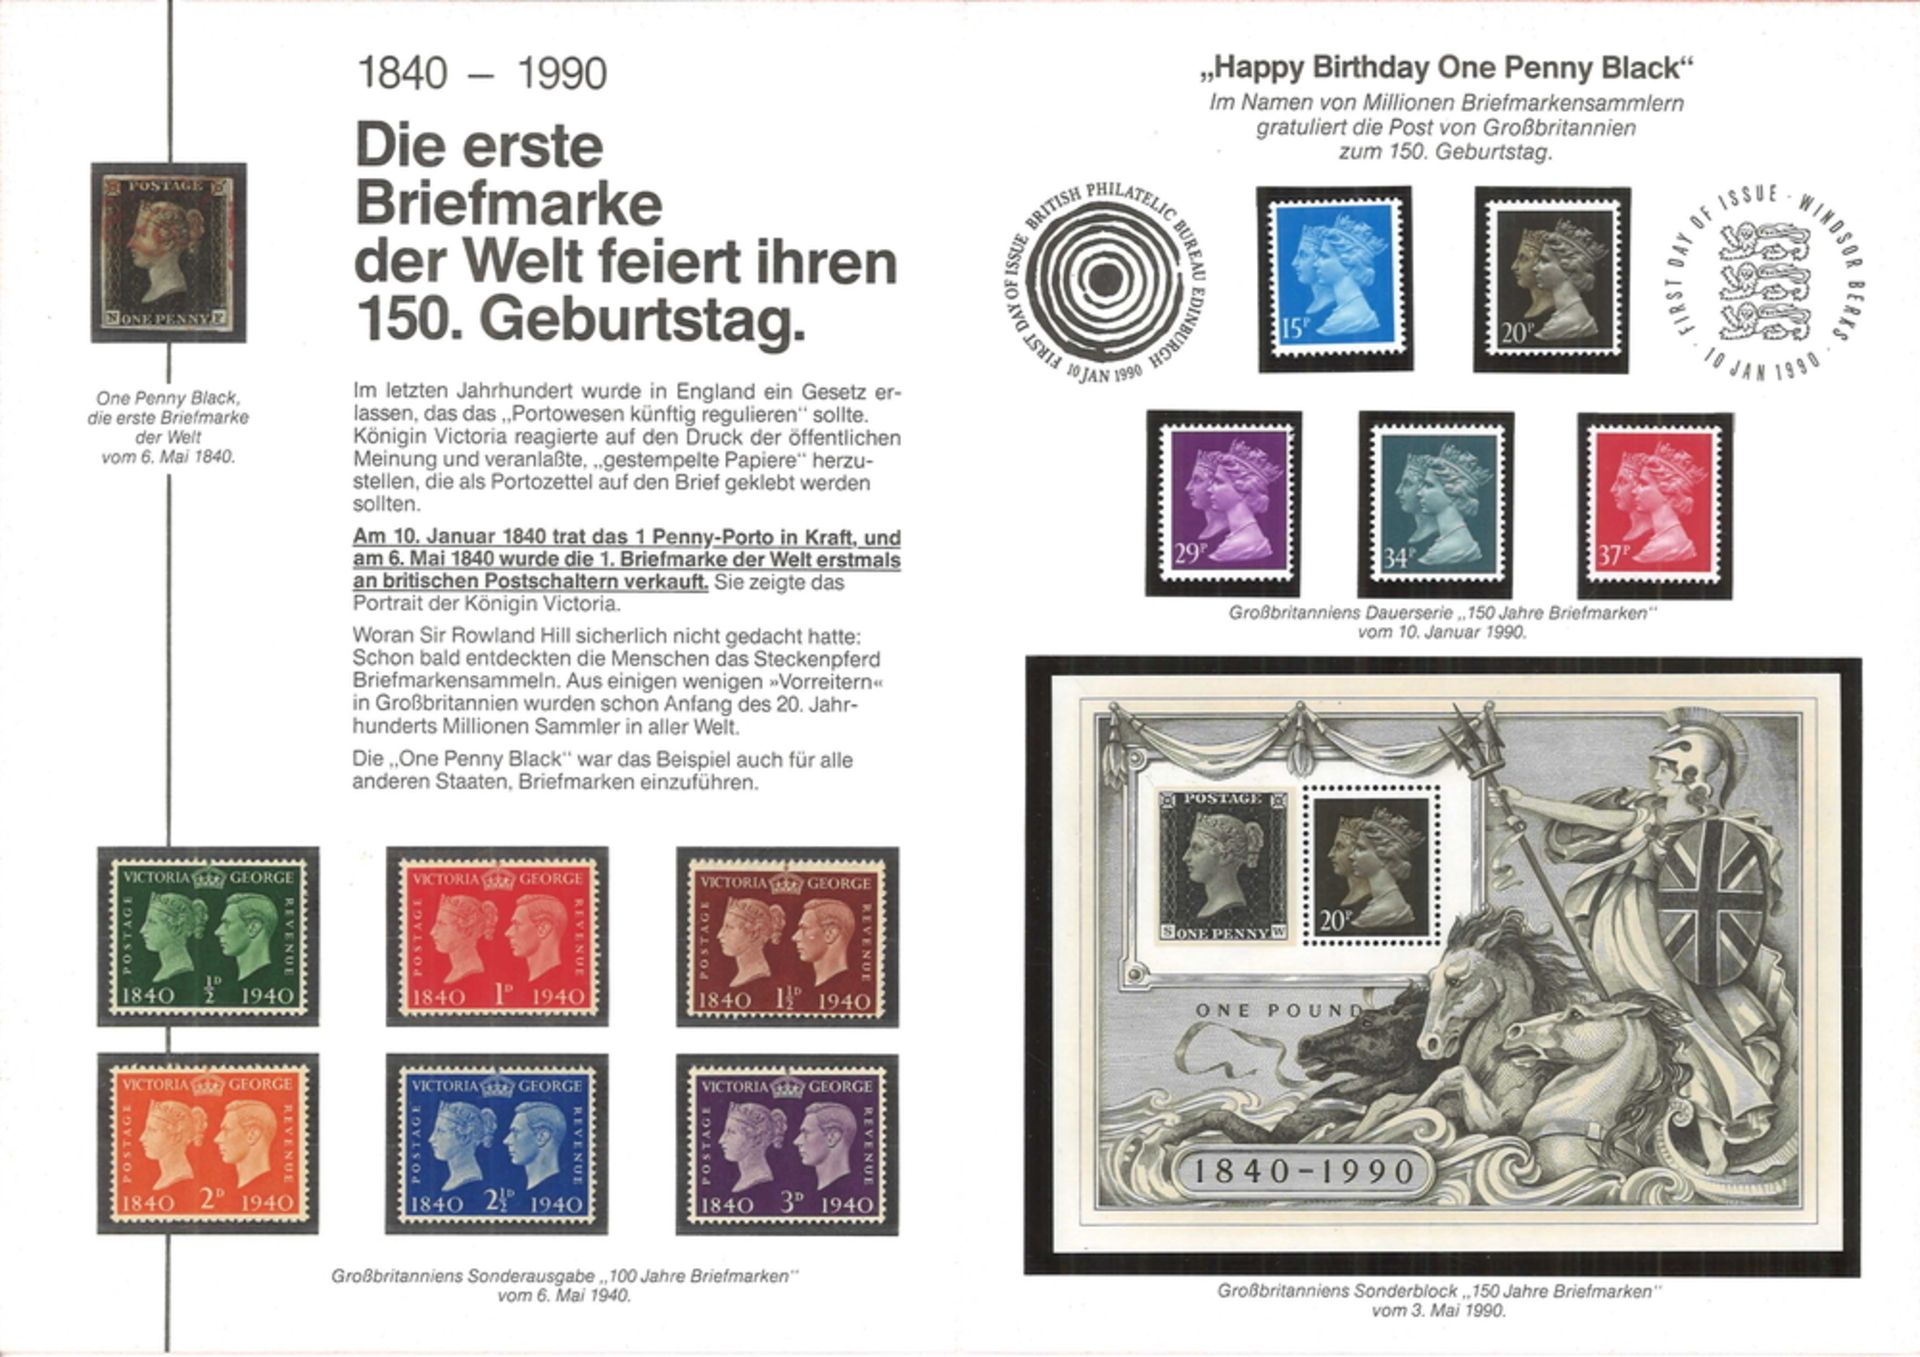 Großbritannien, Sonderblatt "150 Jahre Briefmarken" vom 06.05.1990" Die industr. Revolution